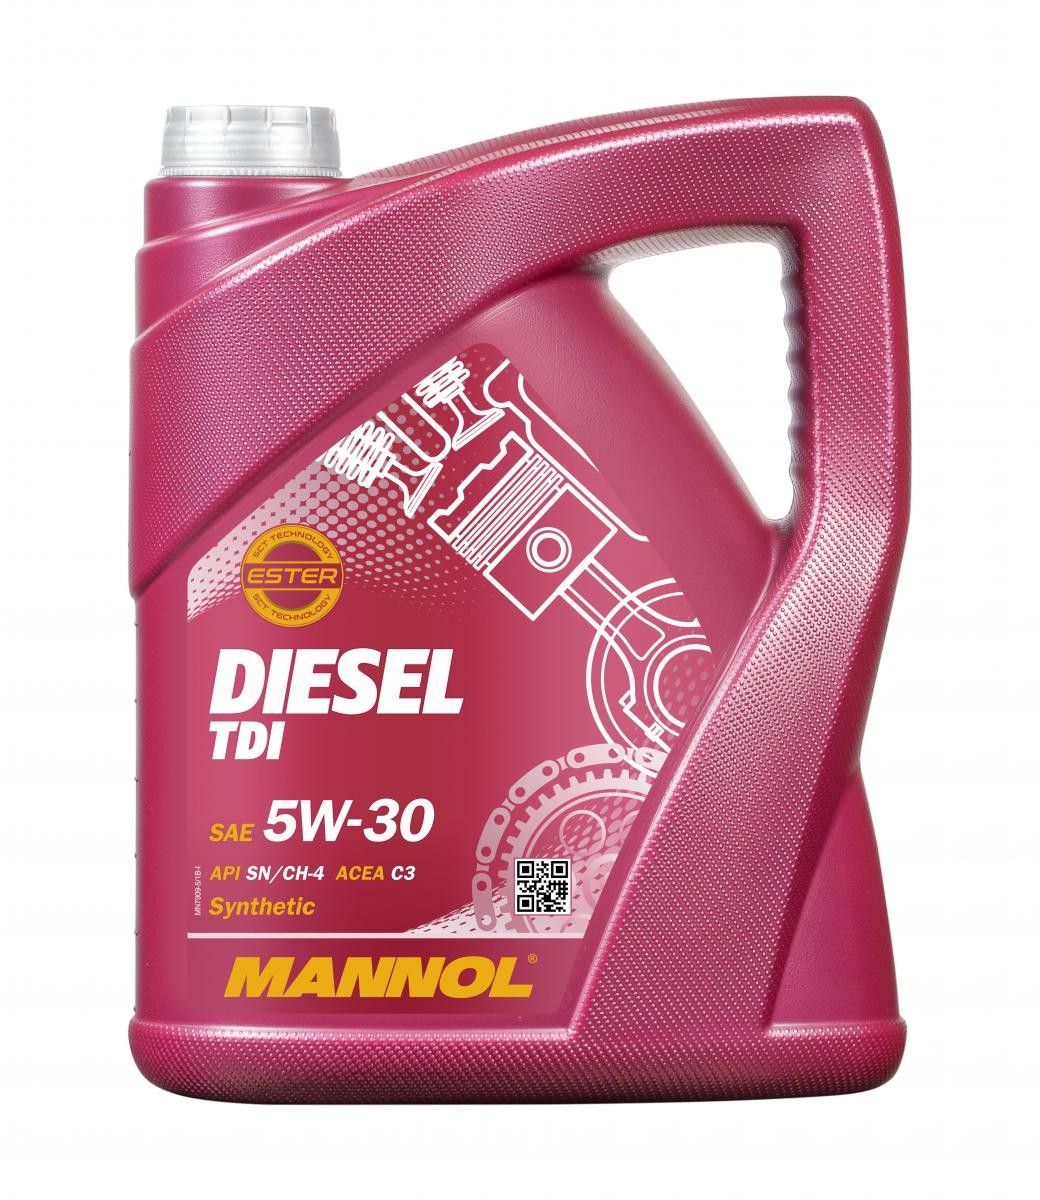 MN7909-5 MANNOL DIESEL TDI 5W-30, 5l, Synthetiköl Motoröl MN7909-5 günstig